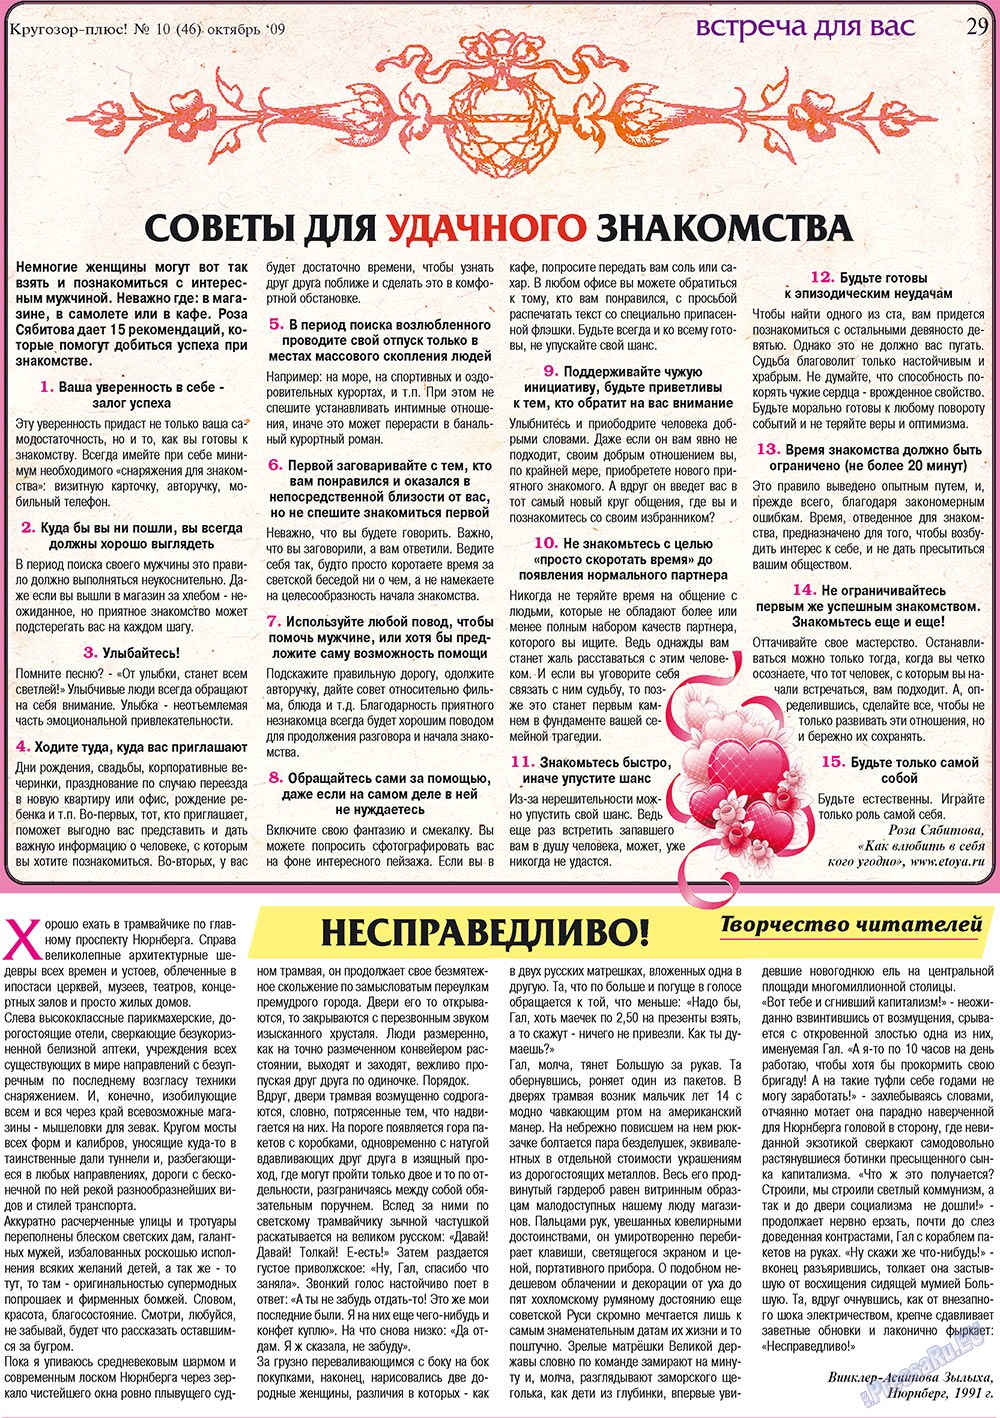 Кругозор плюс!, газета. 2009 №10 стр.29